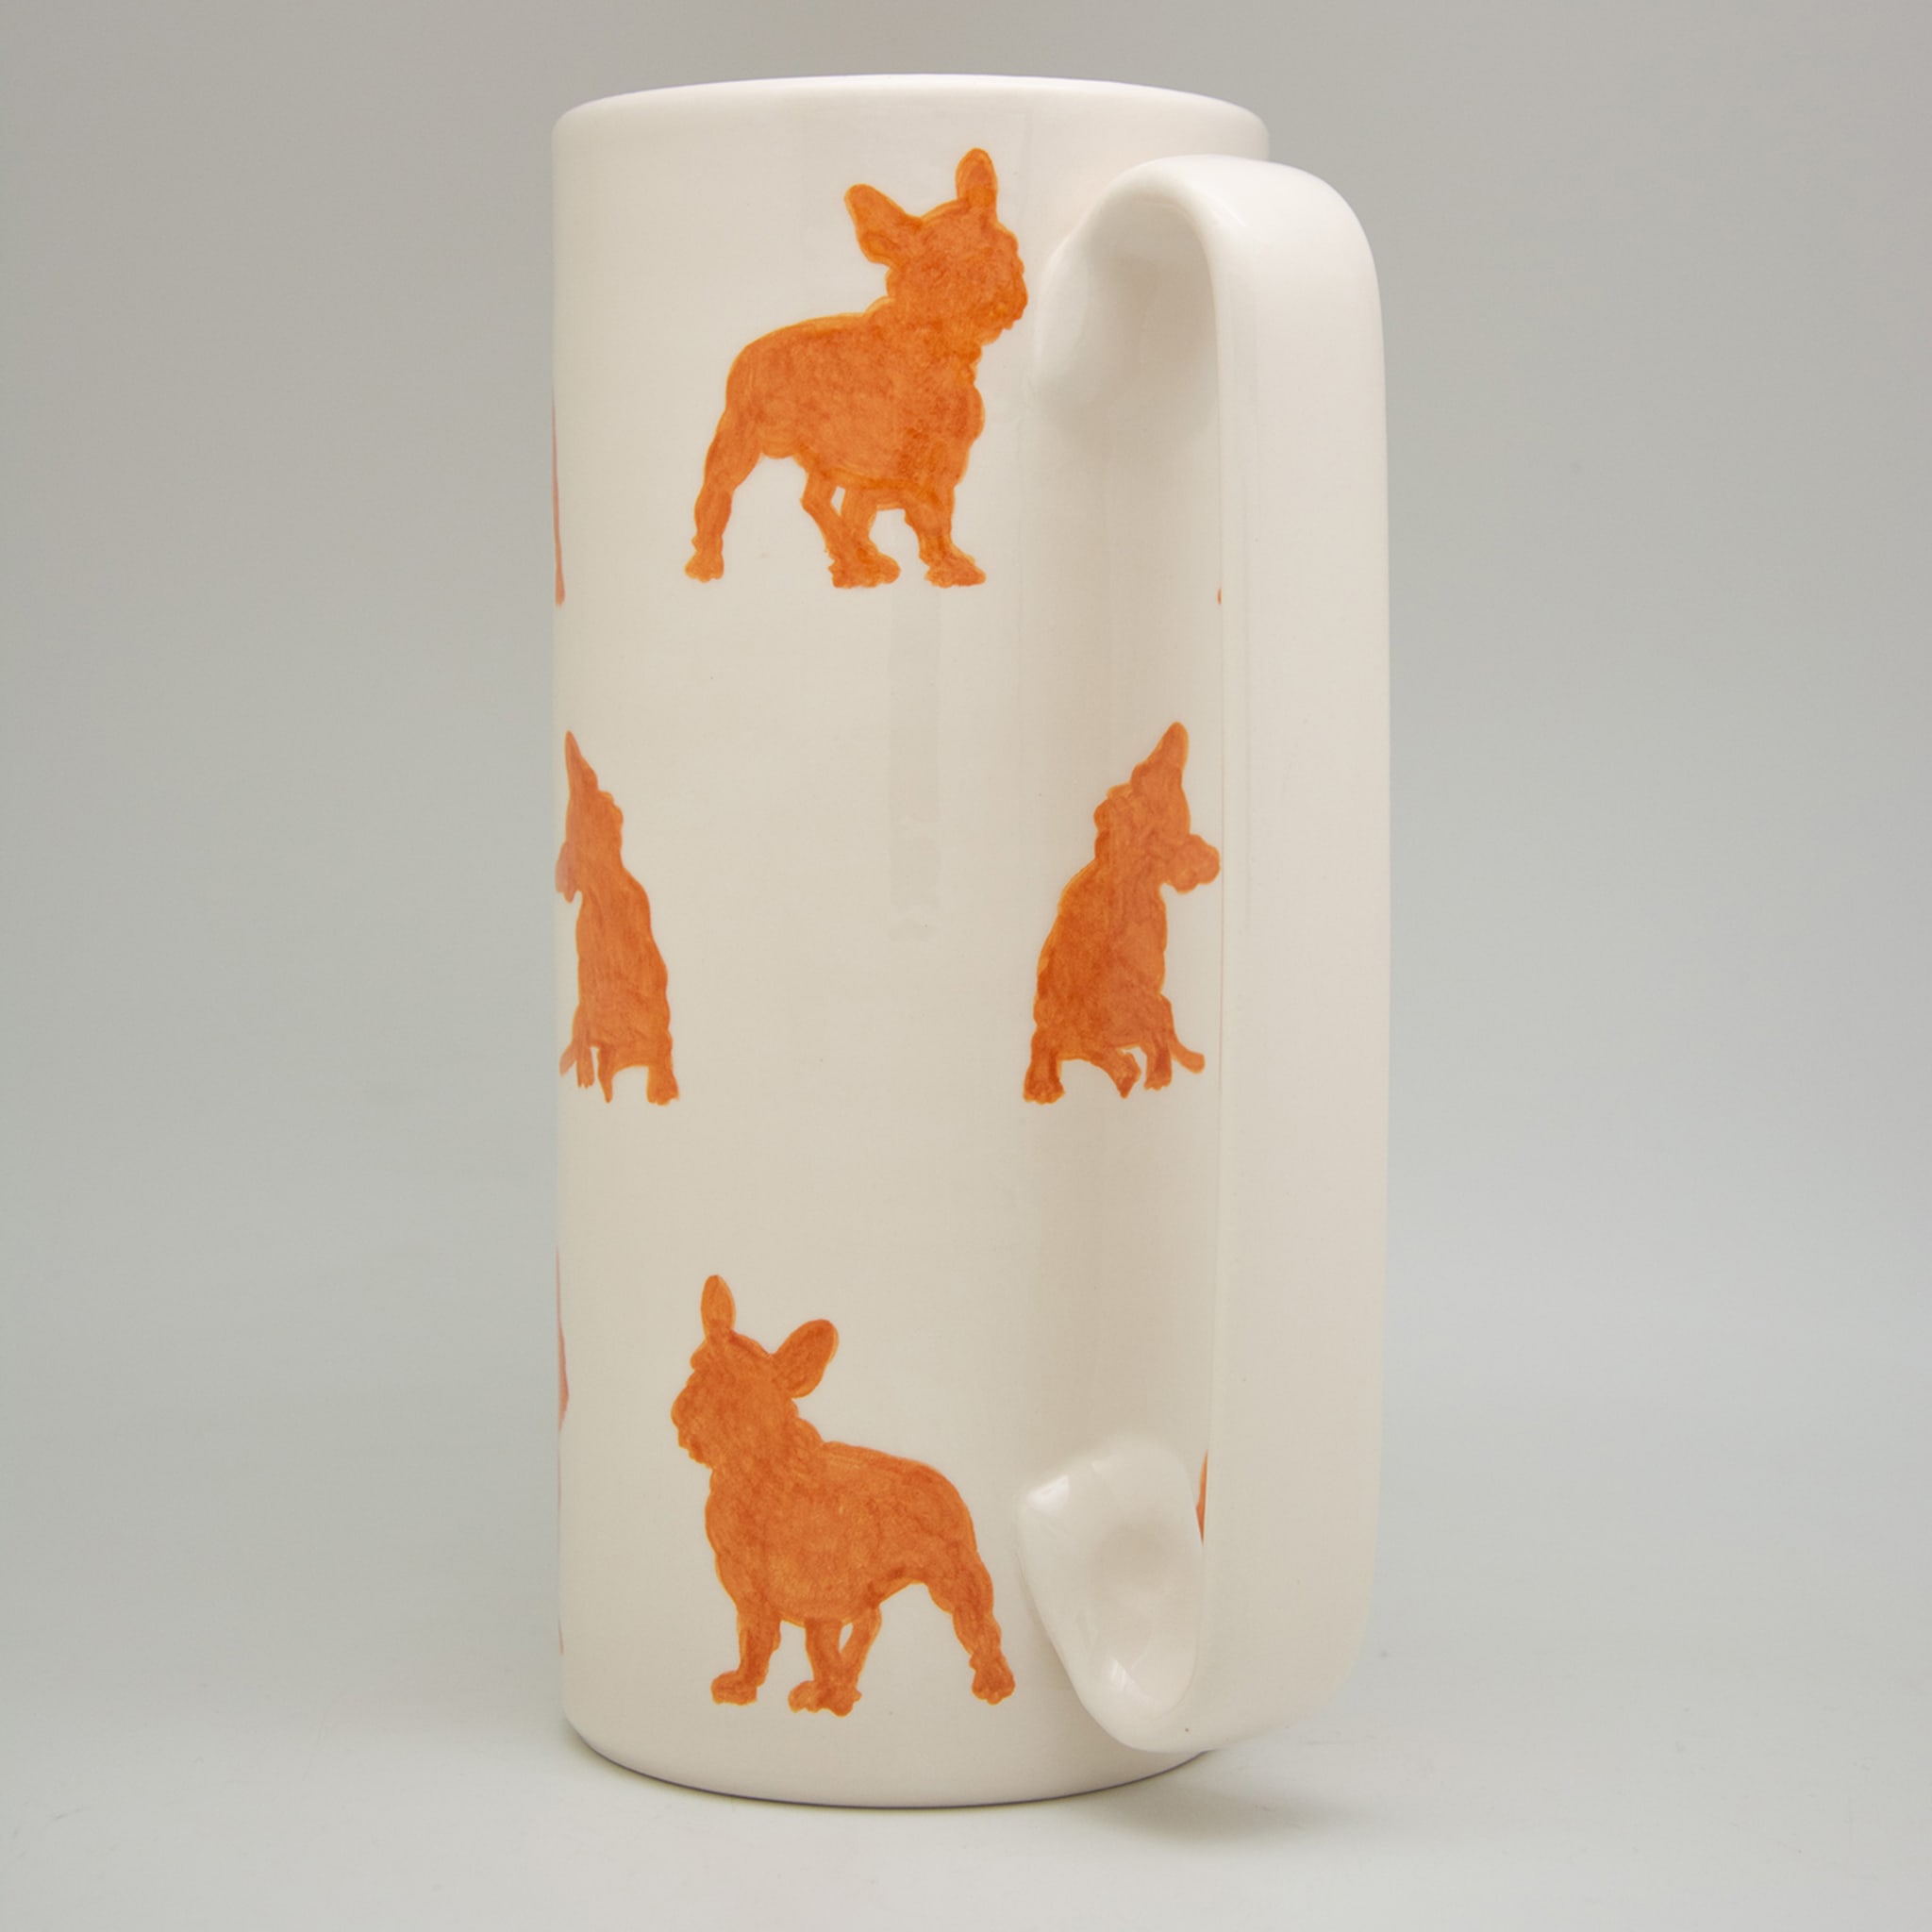 Serlio Französische Bulldogge Orange Keramik-Karaffe - Alternative Ansicht 1